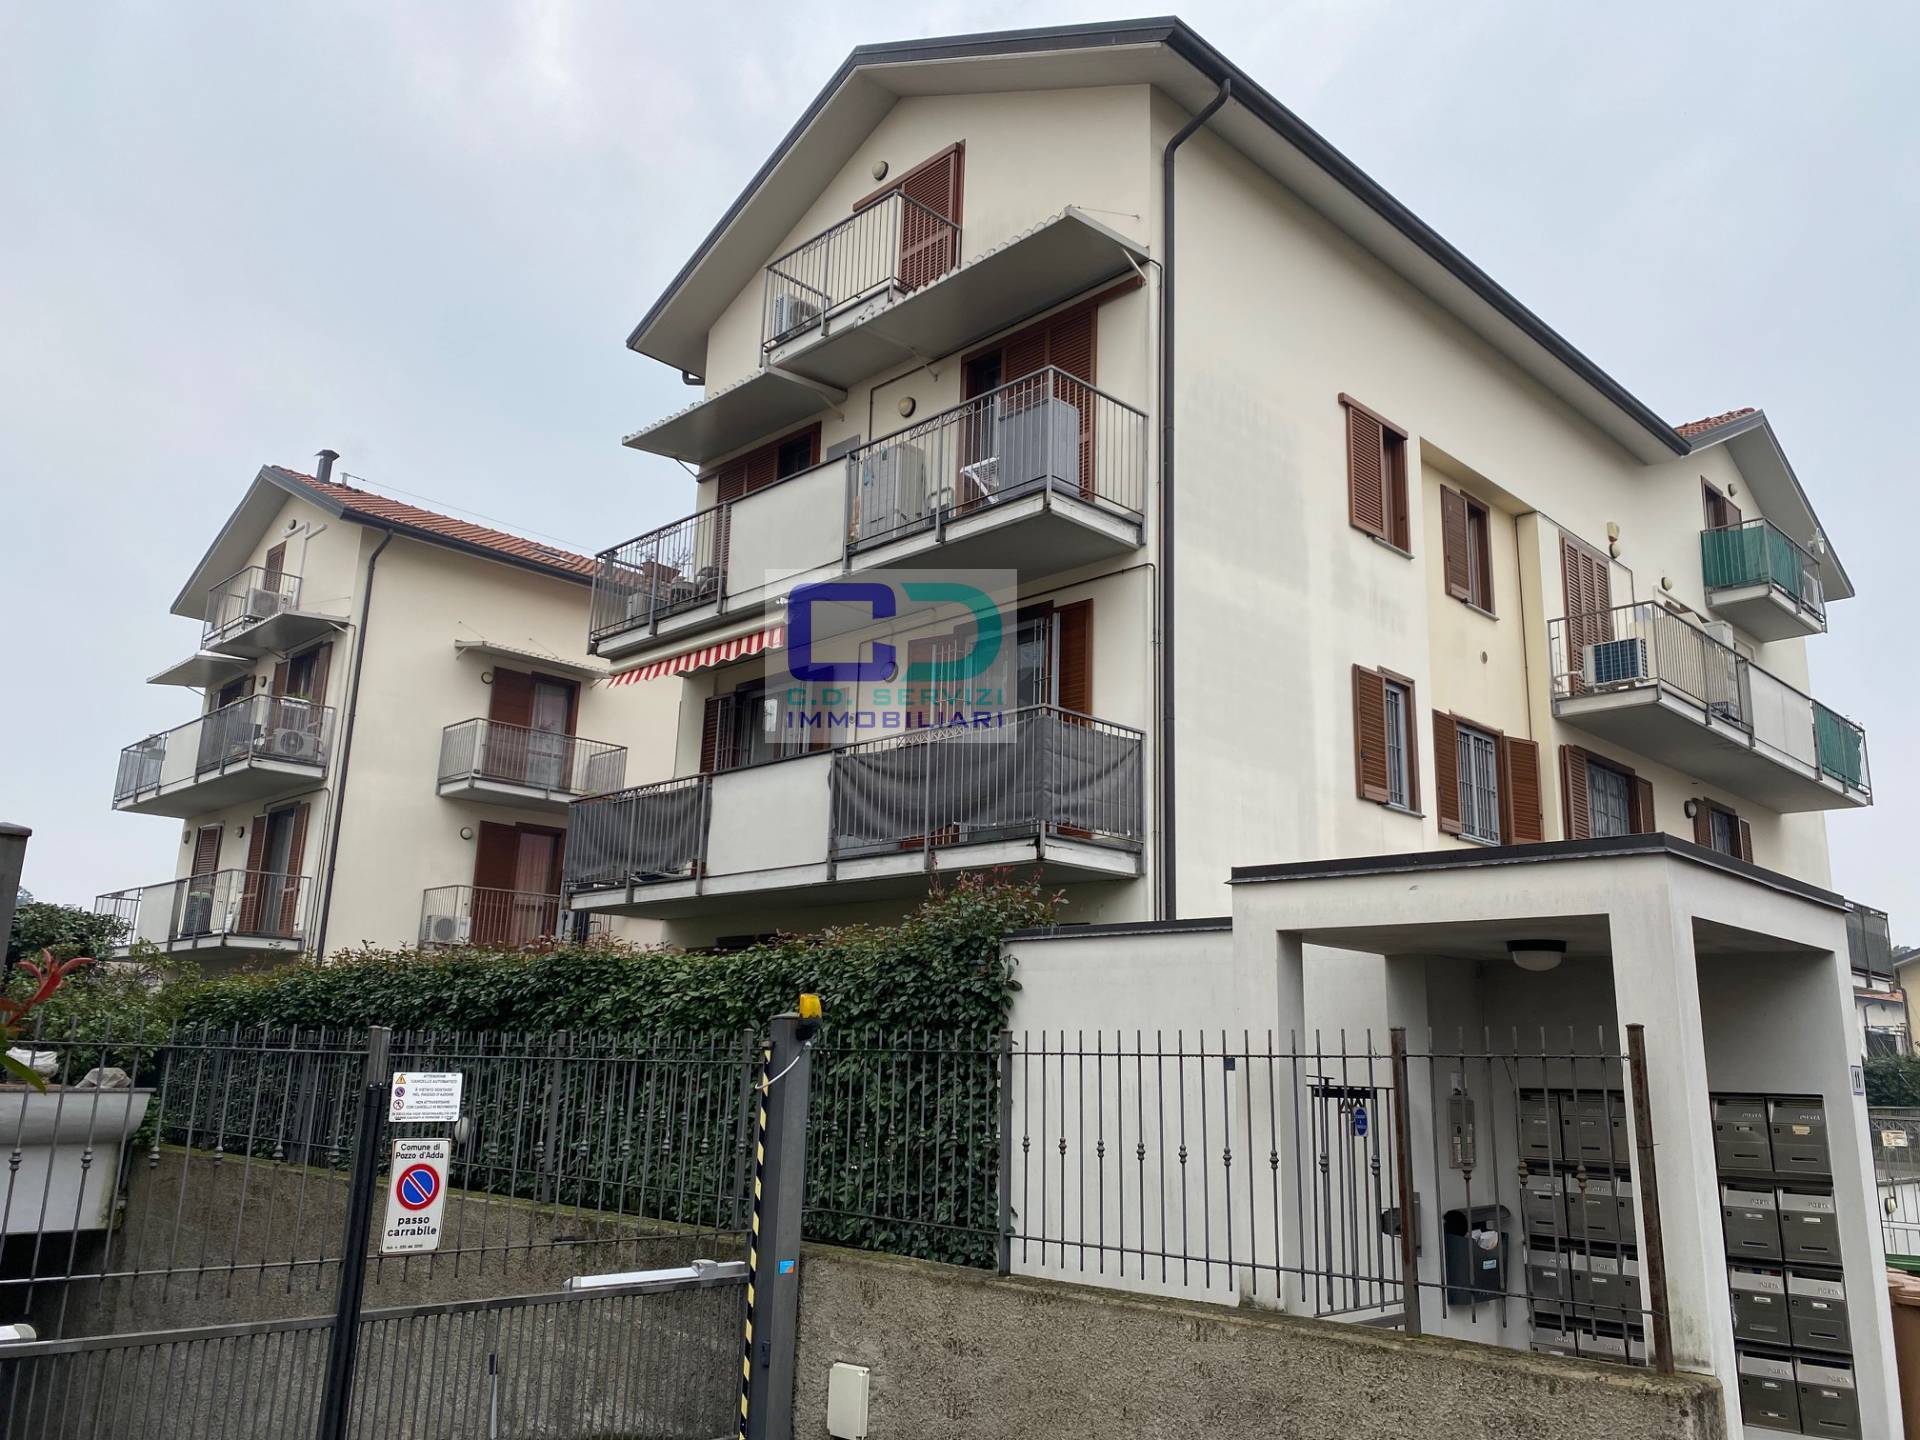 Appartamento in vendita a Pozzo d'Adda, 3 locali, prezzo € 130.000 | PortaleAgenzieImmobiliari.it